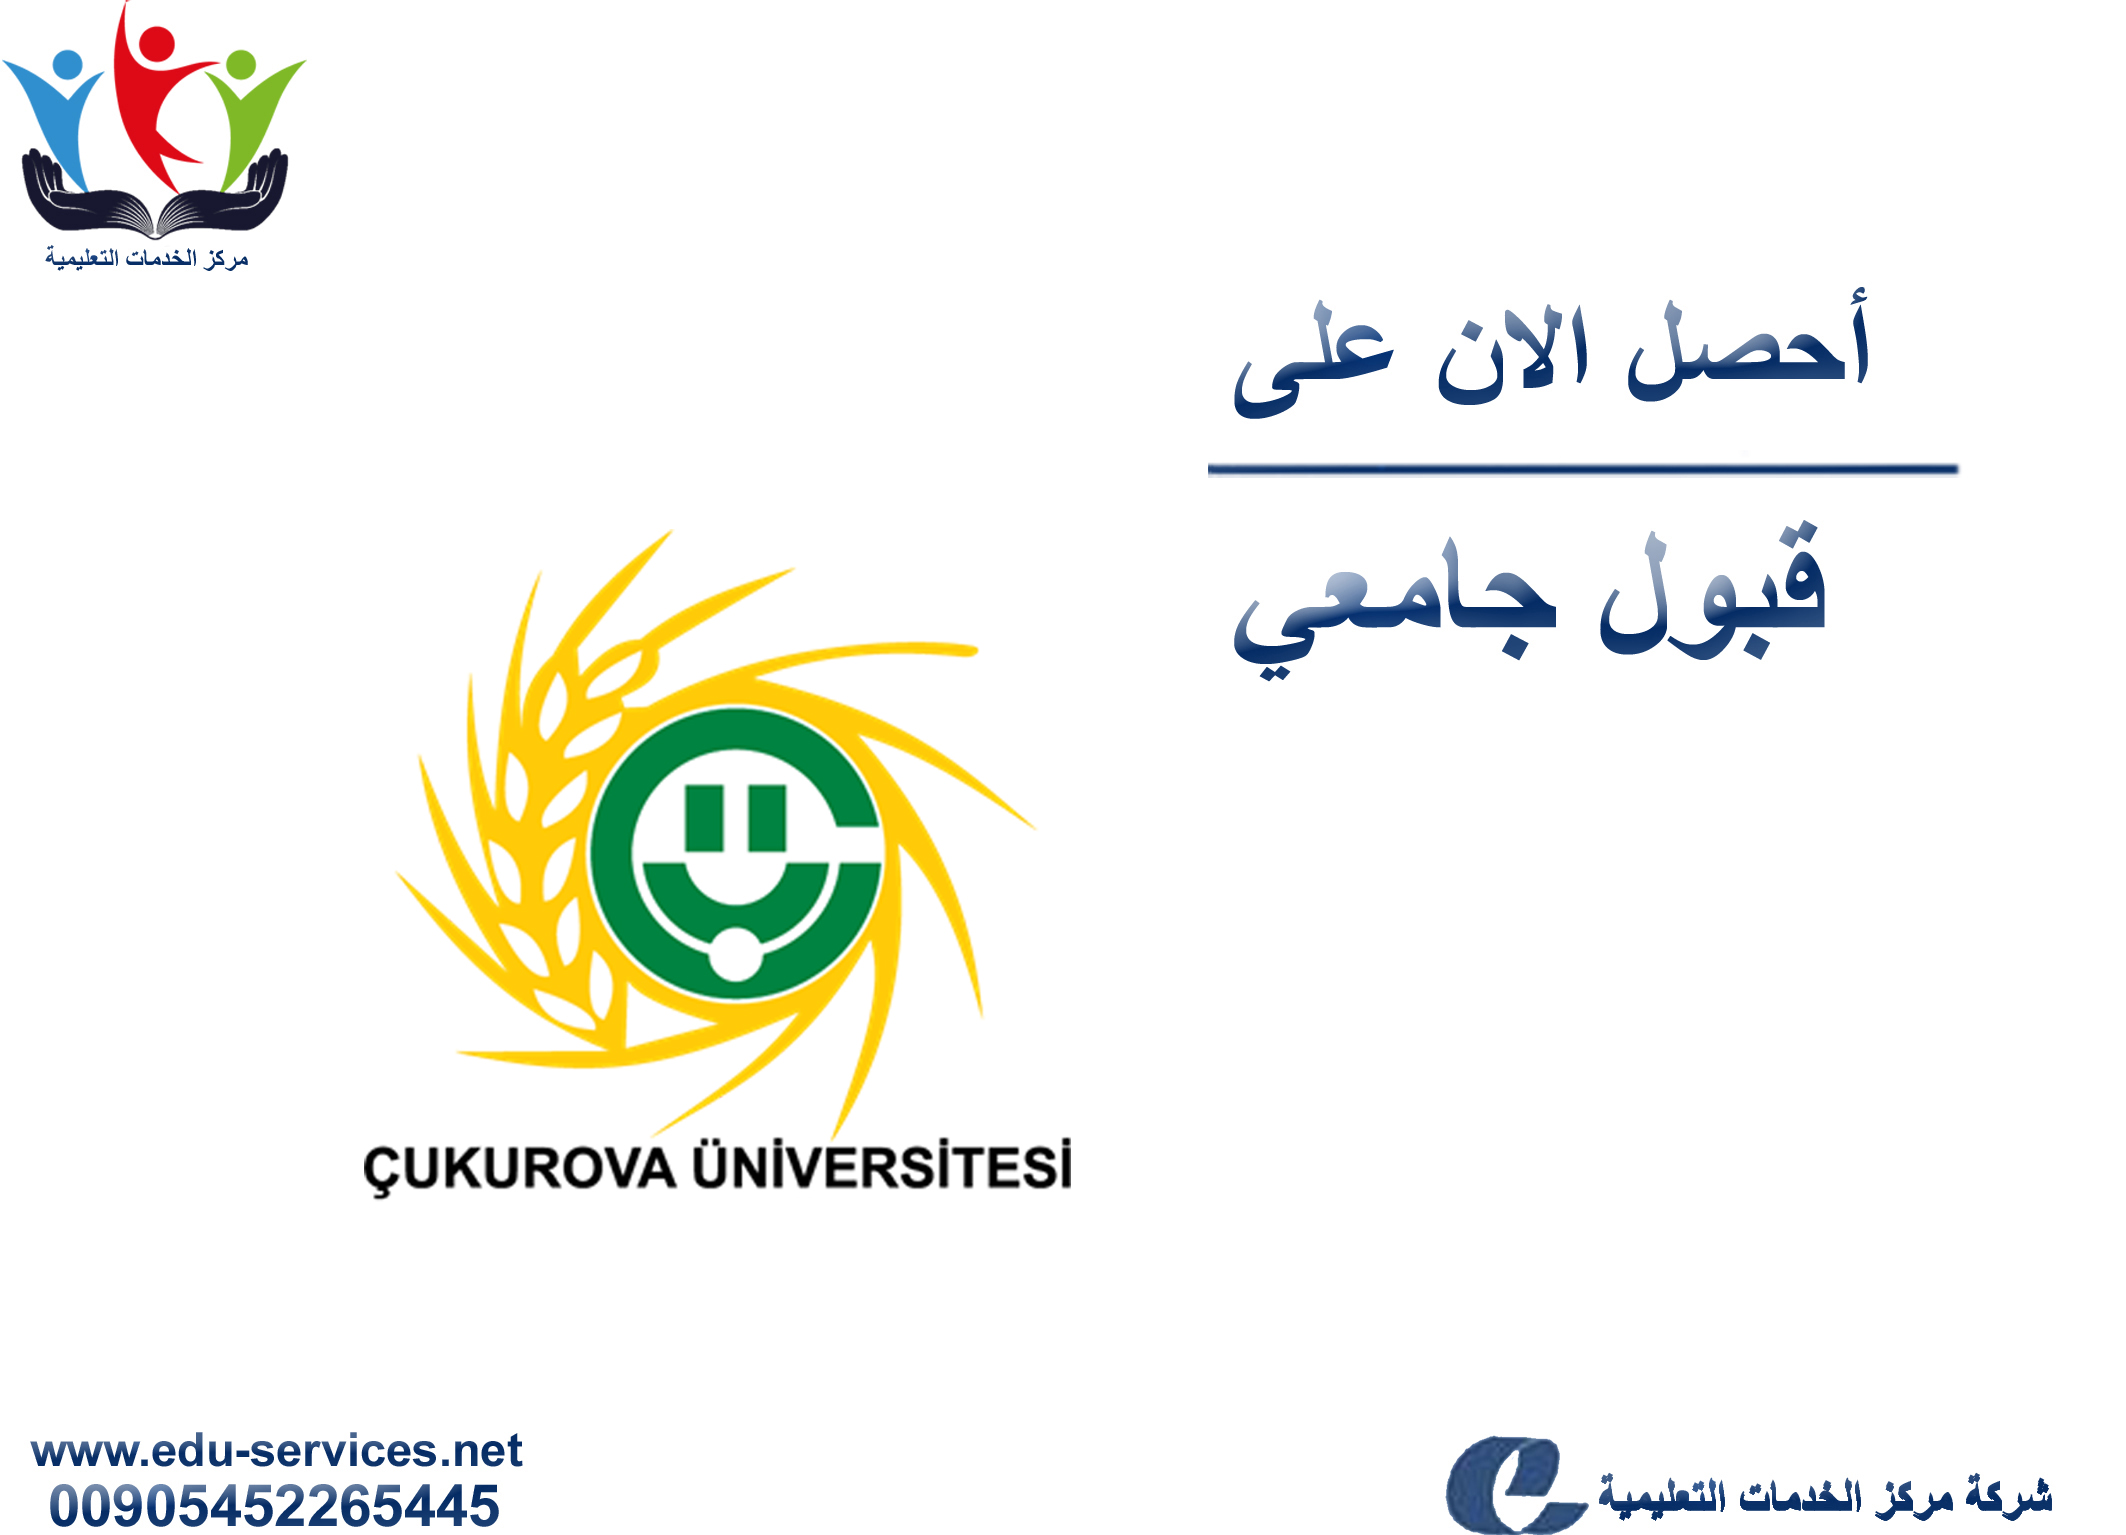 افتتاح التسجيل على جامعة تشكوروفا لبرنامج الدراسات العليا للعام 2019-2020